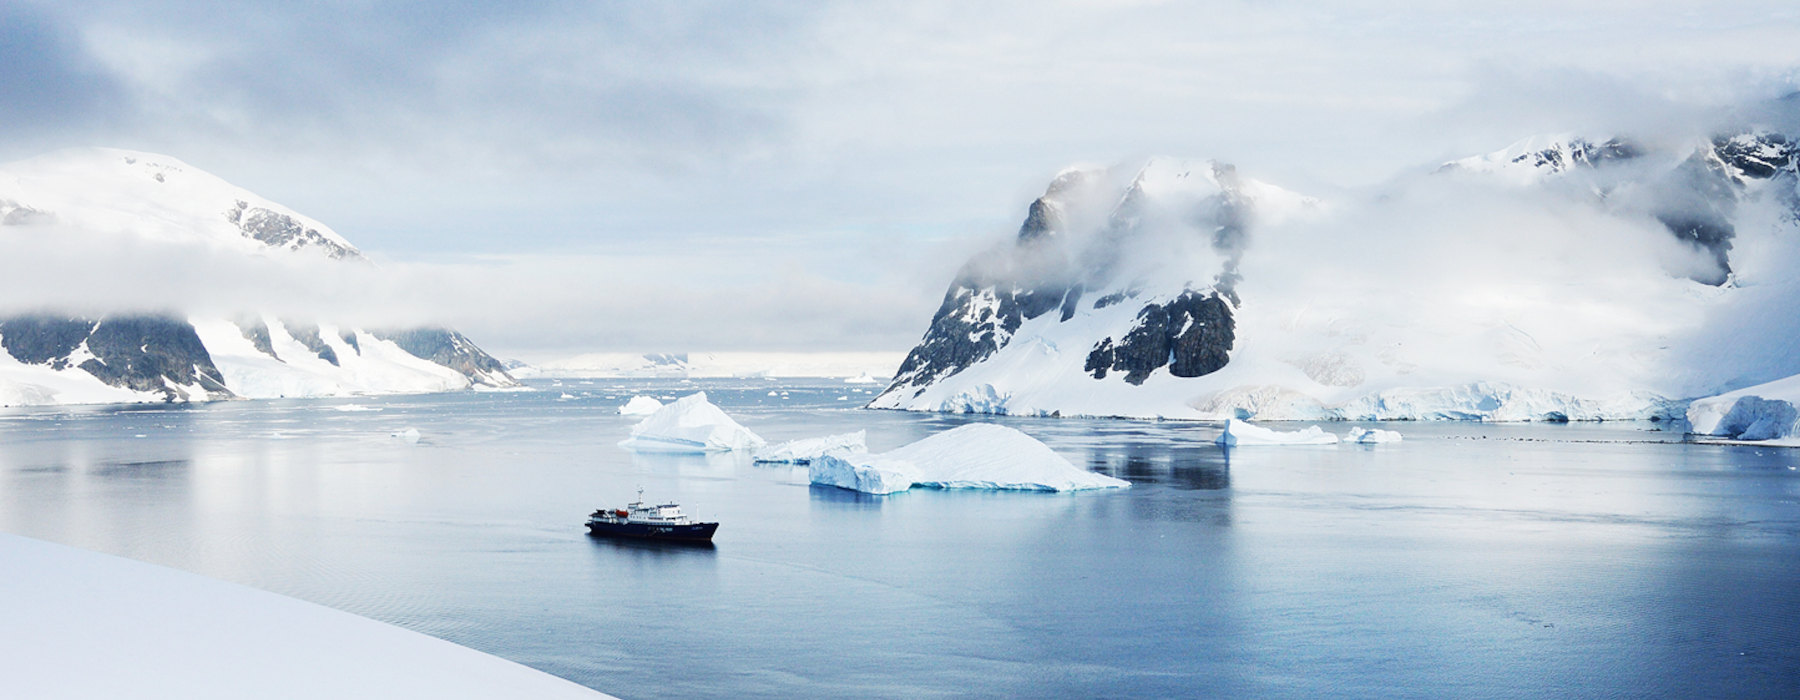 All our Antarctica<br class="hidden-md hidden-lg" /> Winter Holidays